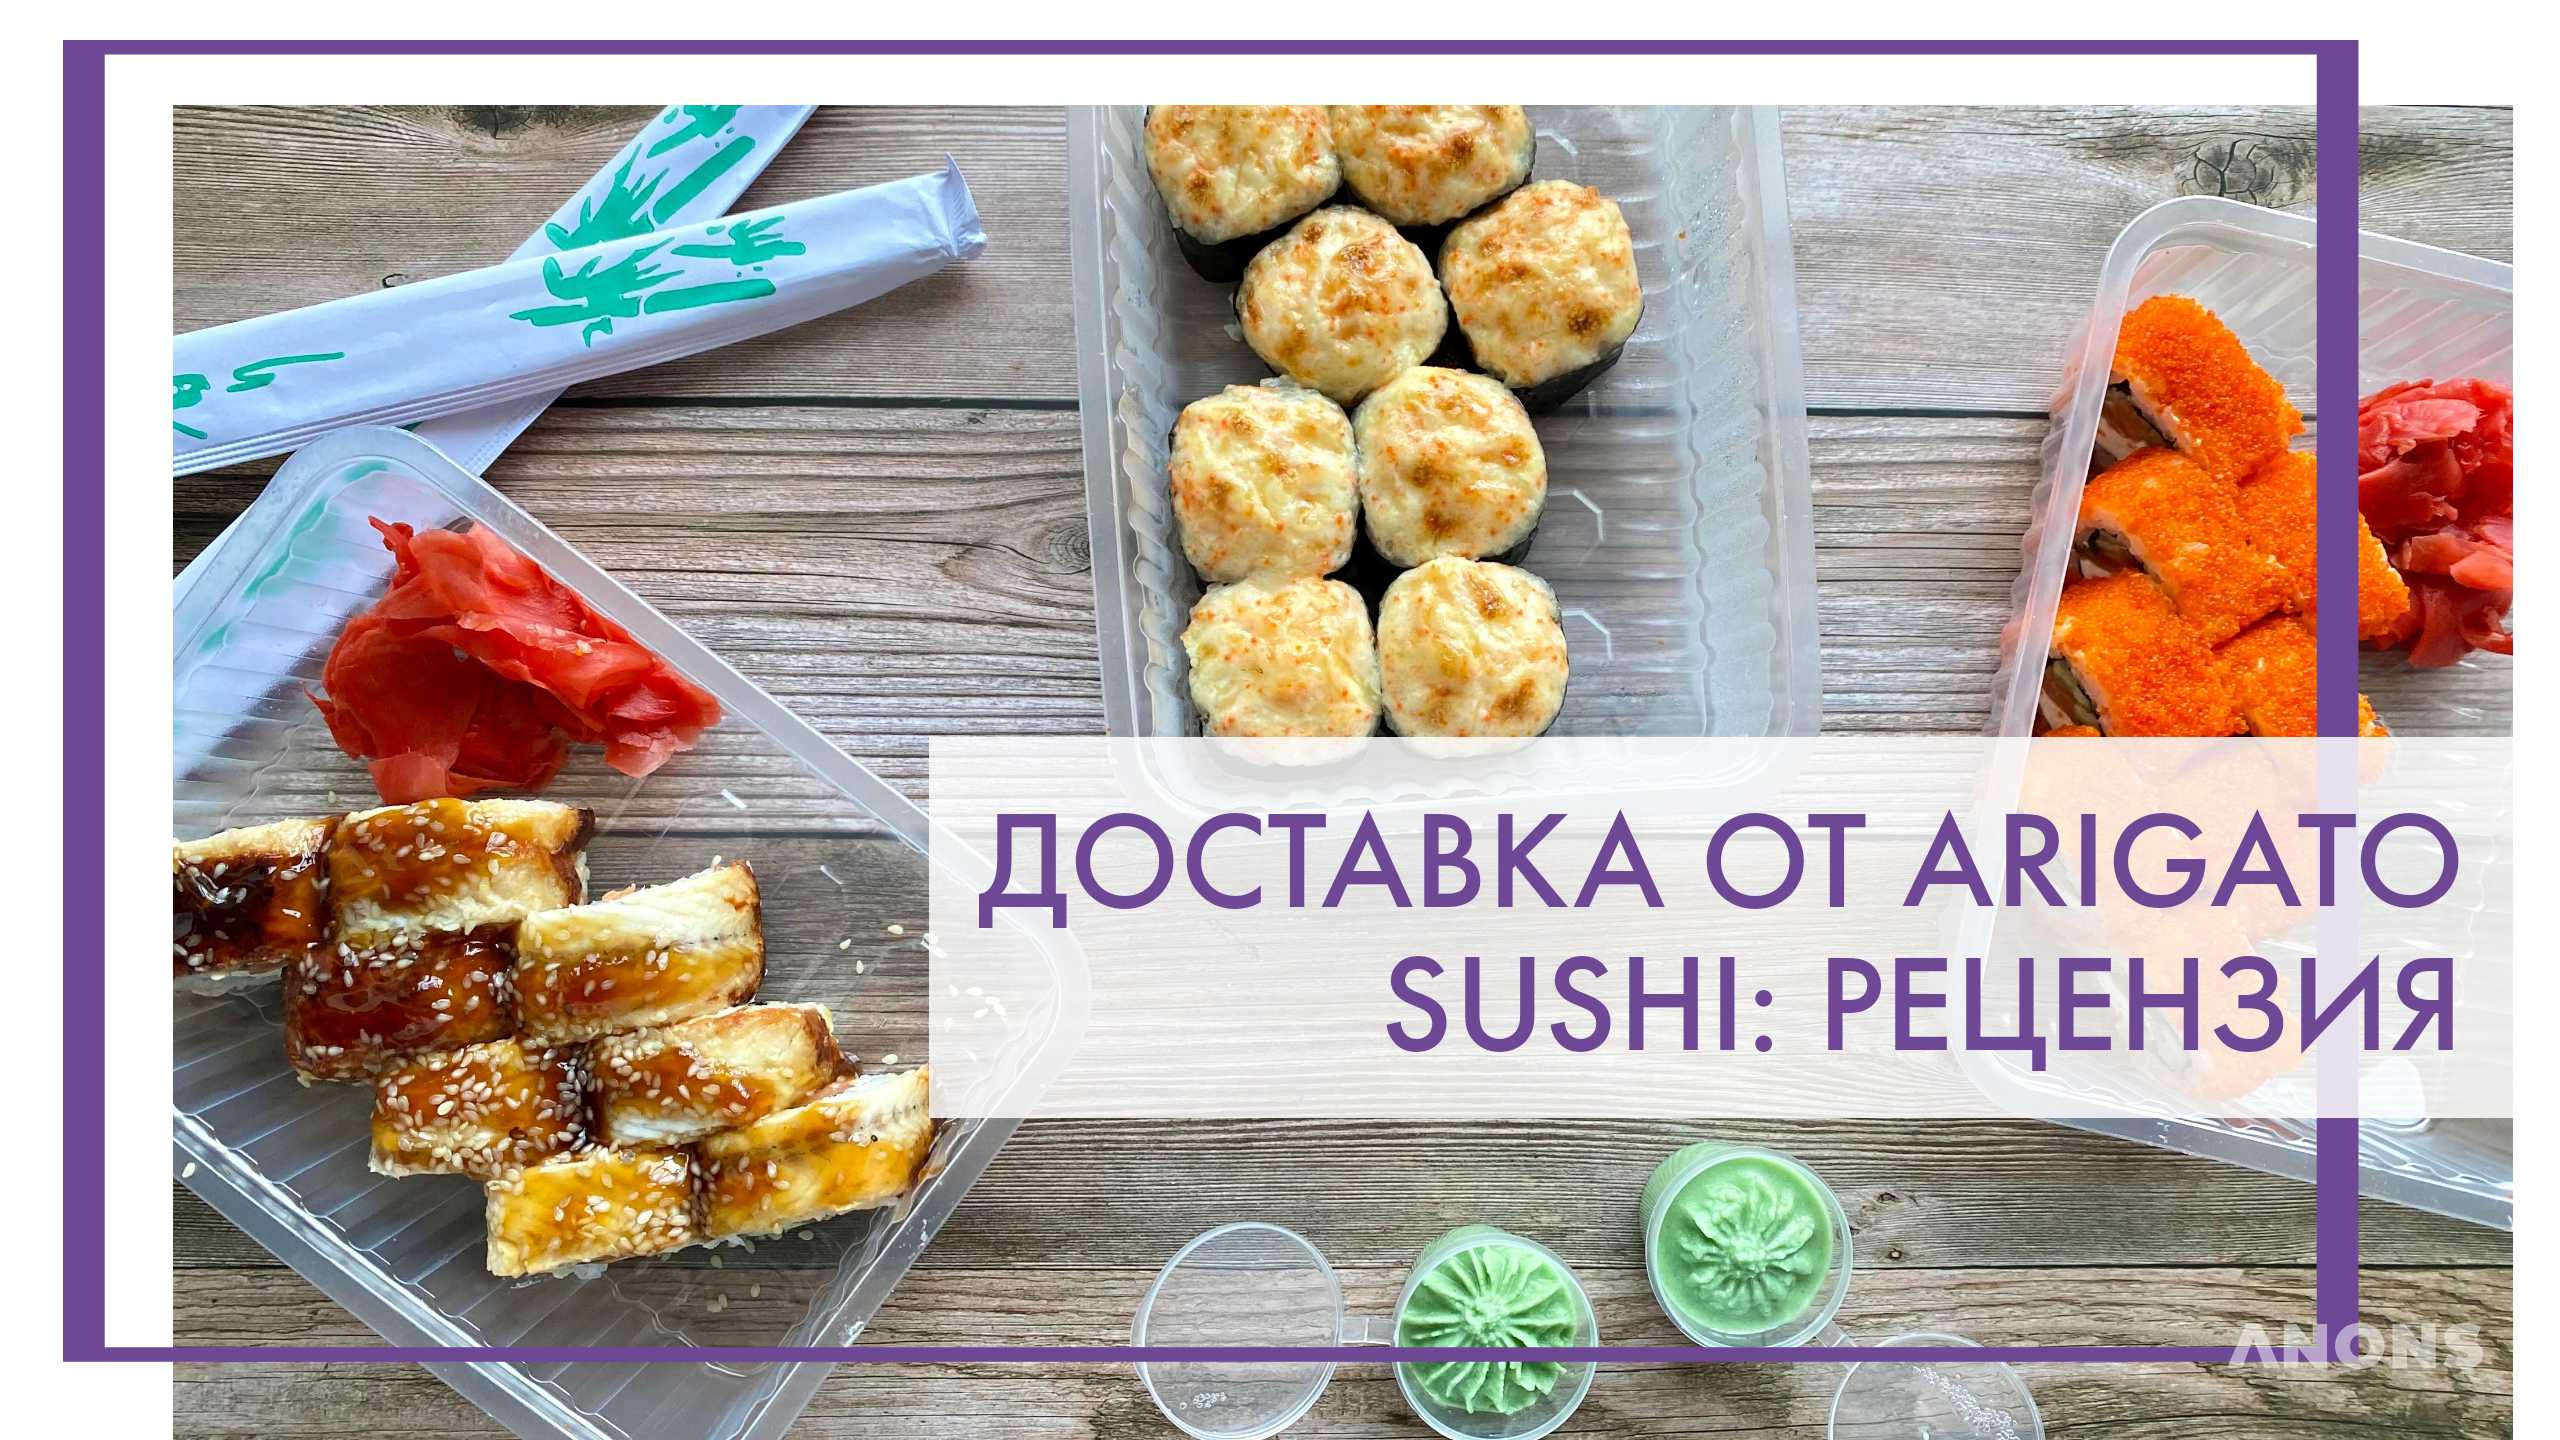 Доставка от Arigato sushi - рецензия